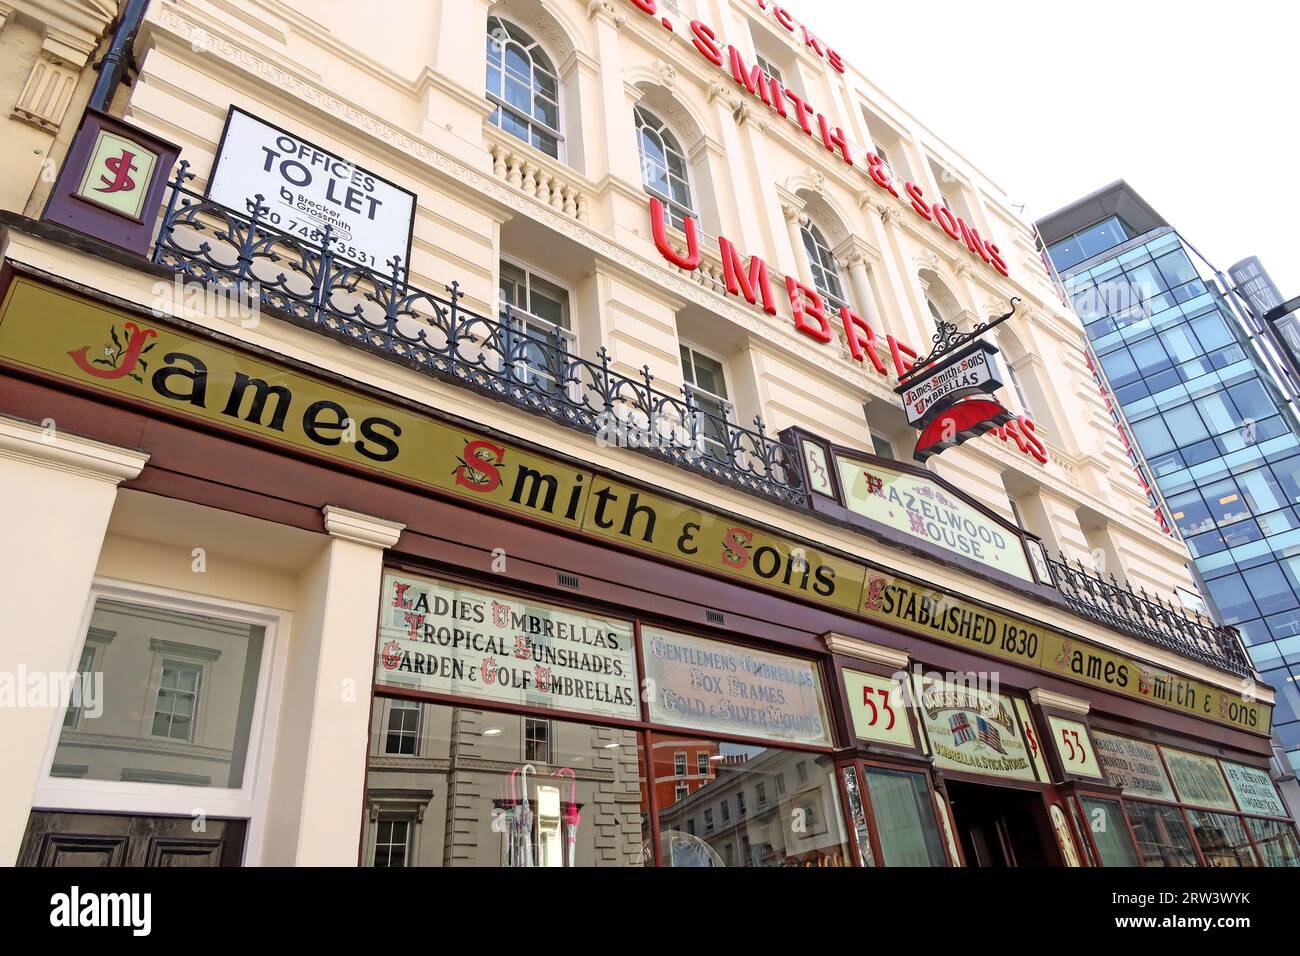 James Smith & Sons parapluies, fondée en 1830, Hazelwood House, 53 New Oxford St, Londres, WC1A 1BL Banque D'Images